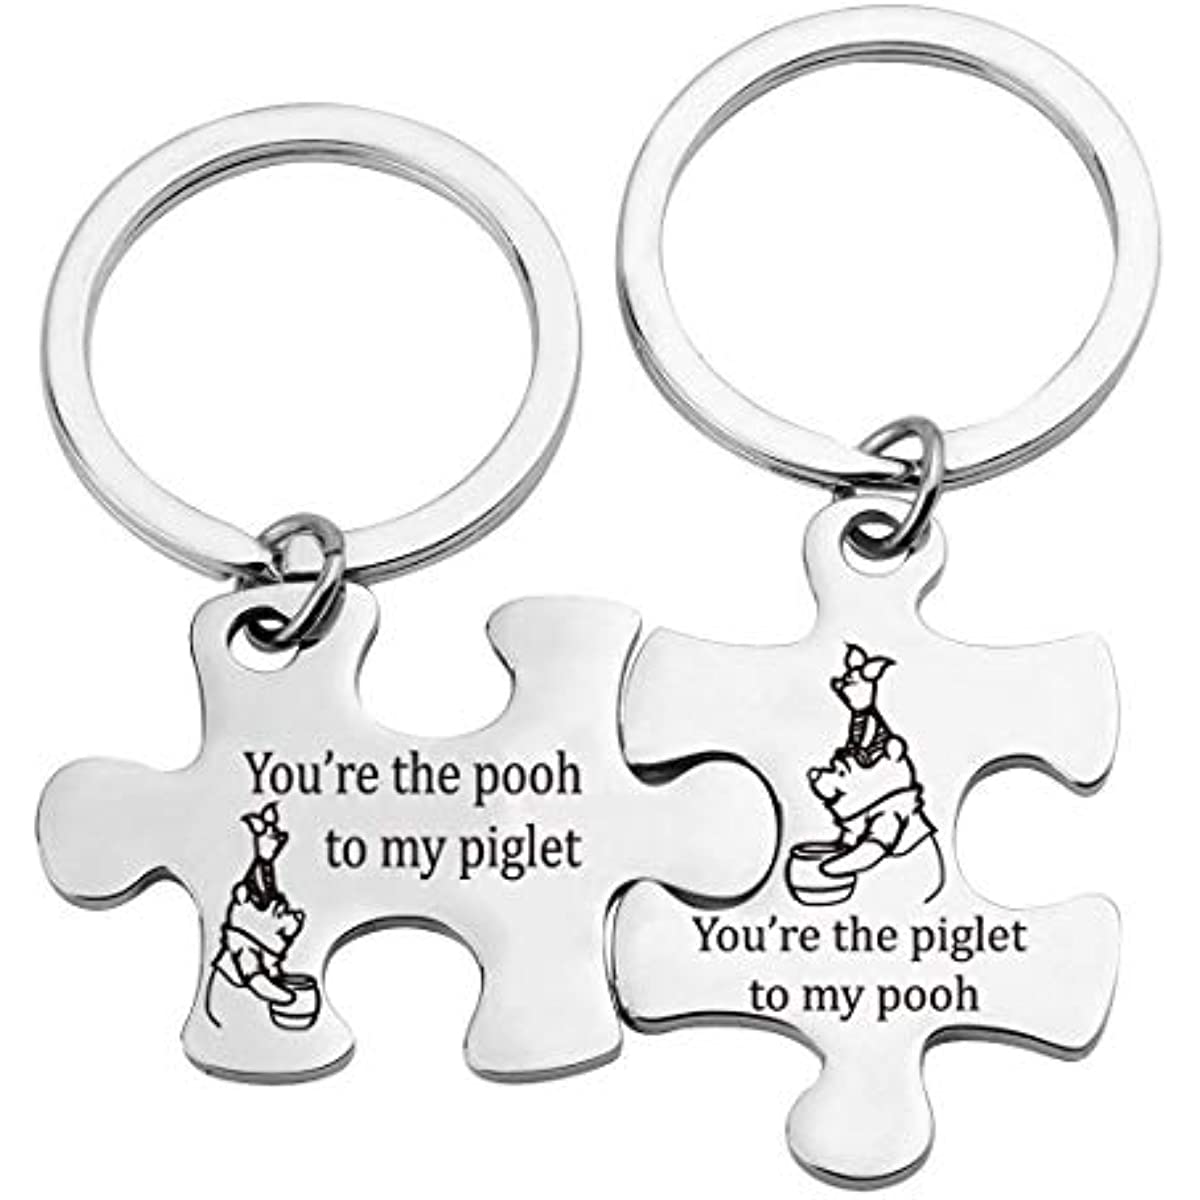 Best Friends Keychain Set Friendship Gift Winnie The Pooh Piglet Gift Winnie The Pooh Jewelry Puzzle 1 - Winnie The Pooh Plush